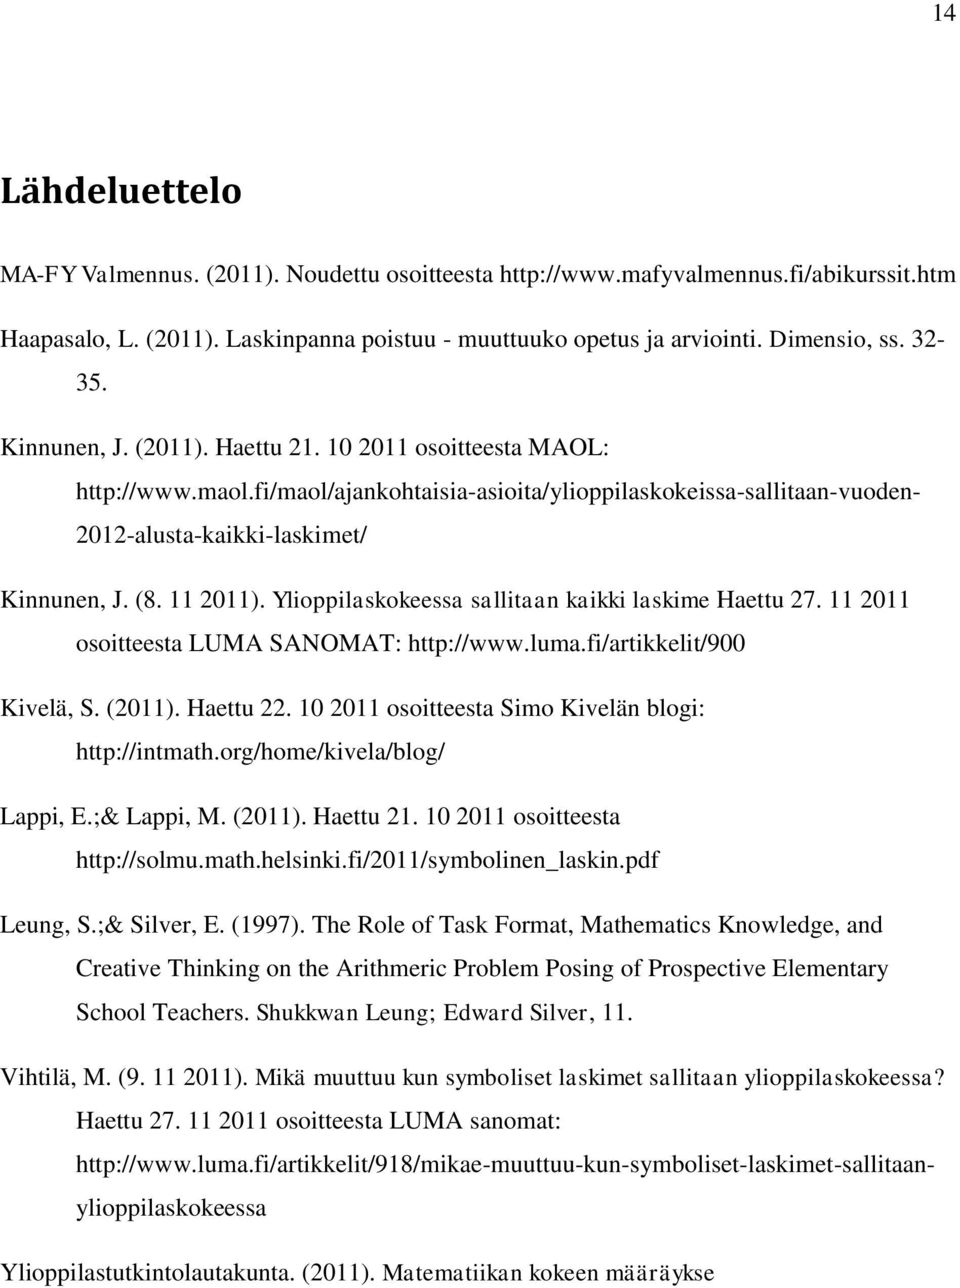 11 2011). Ylioppilaskokeessa sallitaan kaikki laskime Haettu 27. 11 2011 osoitteesta LUMA SANOMAT: http://www.luma.fi/artikkelit/900 Kivelä, S. (2011). Haettu 22.